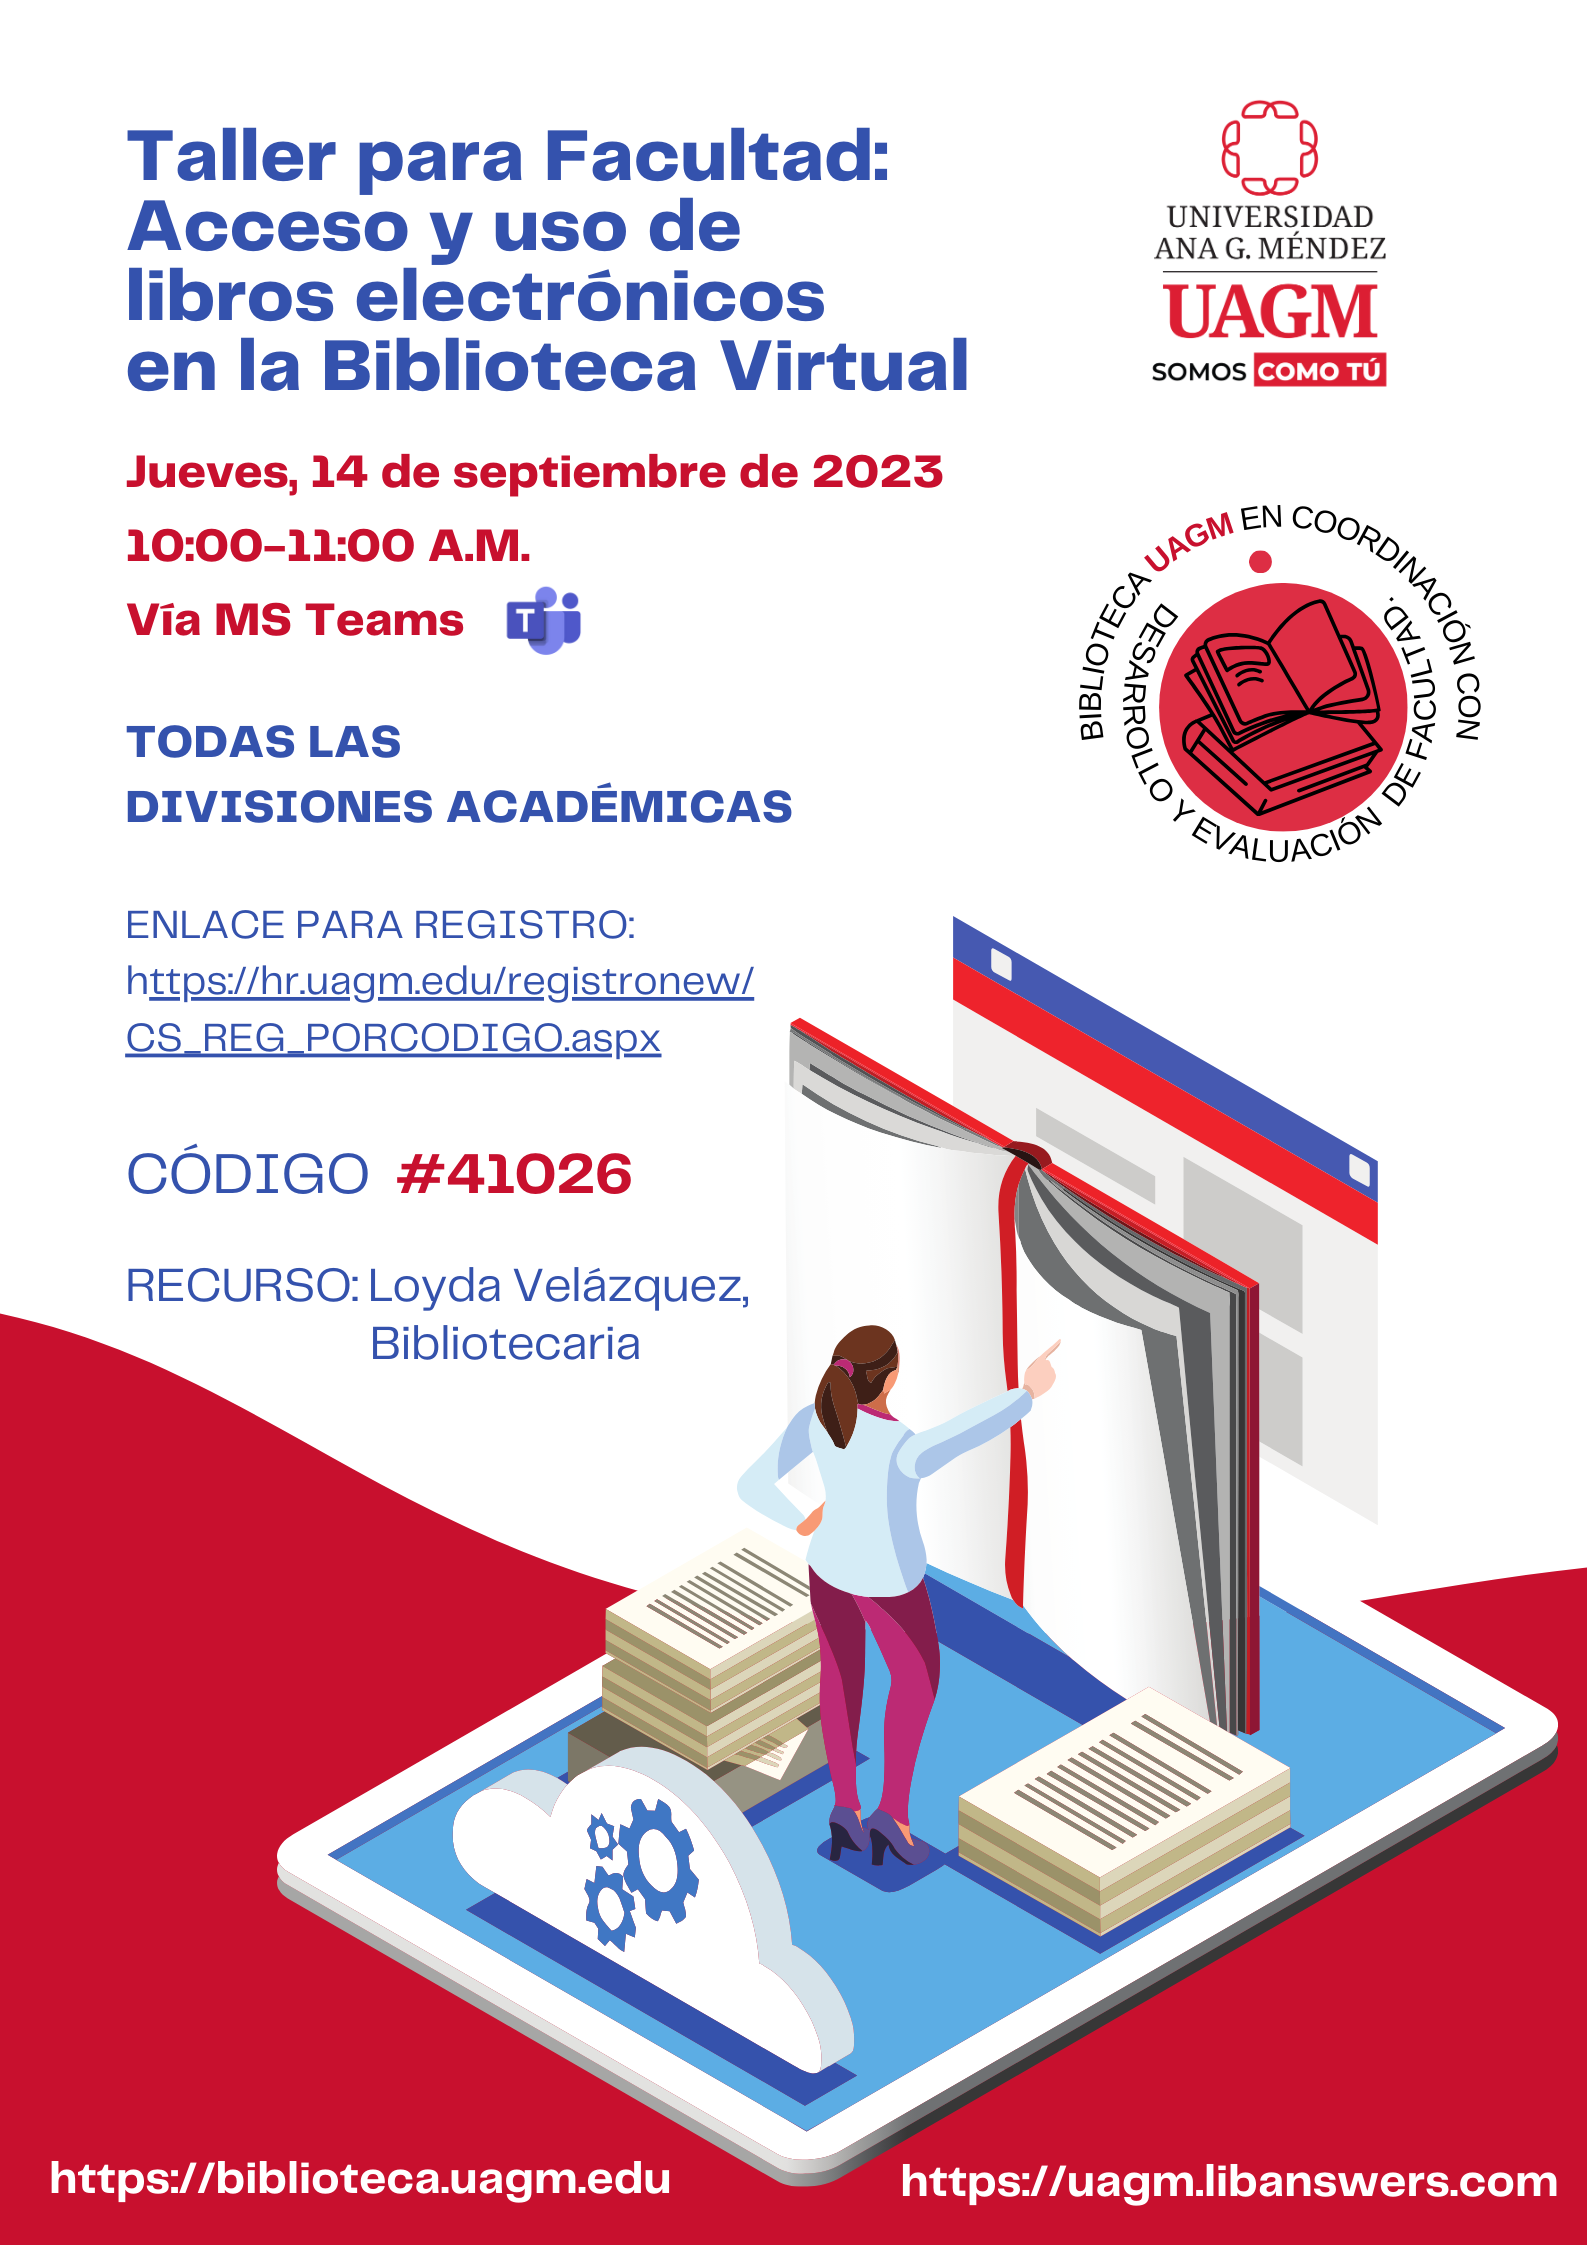 Taller acceso y uso de libros electronicos en la Biblioteca Virtual